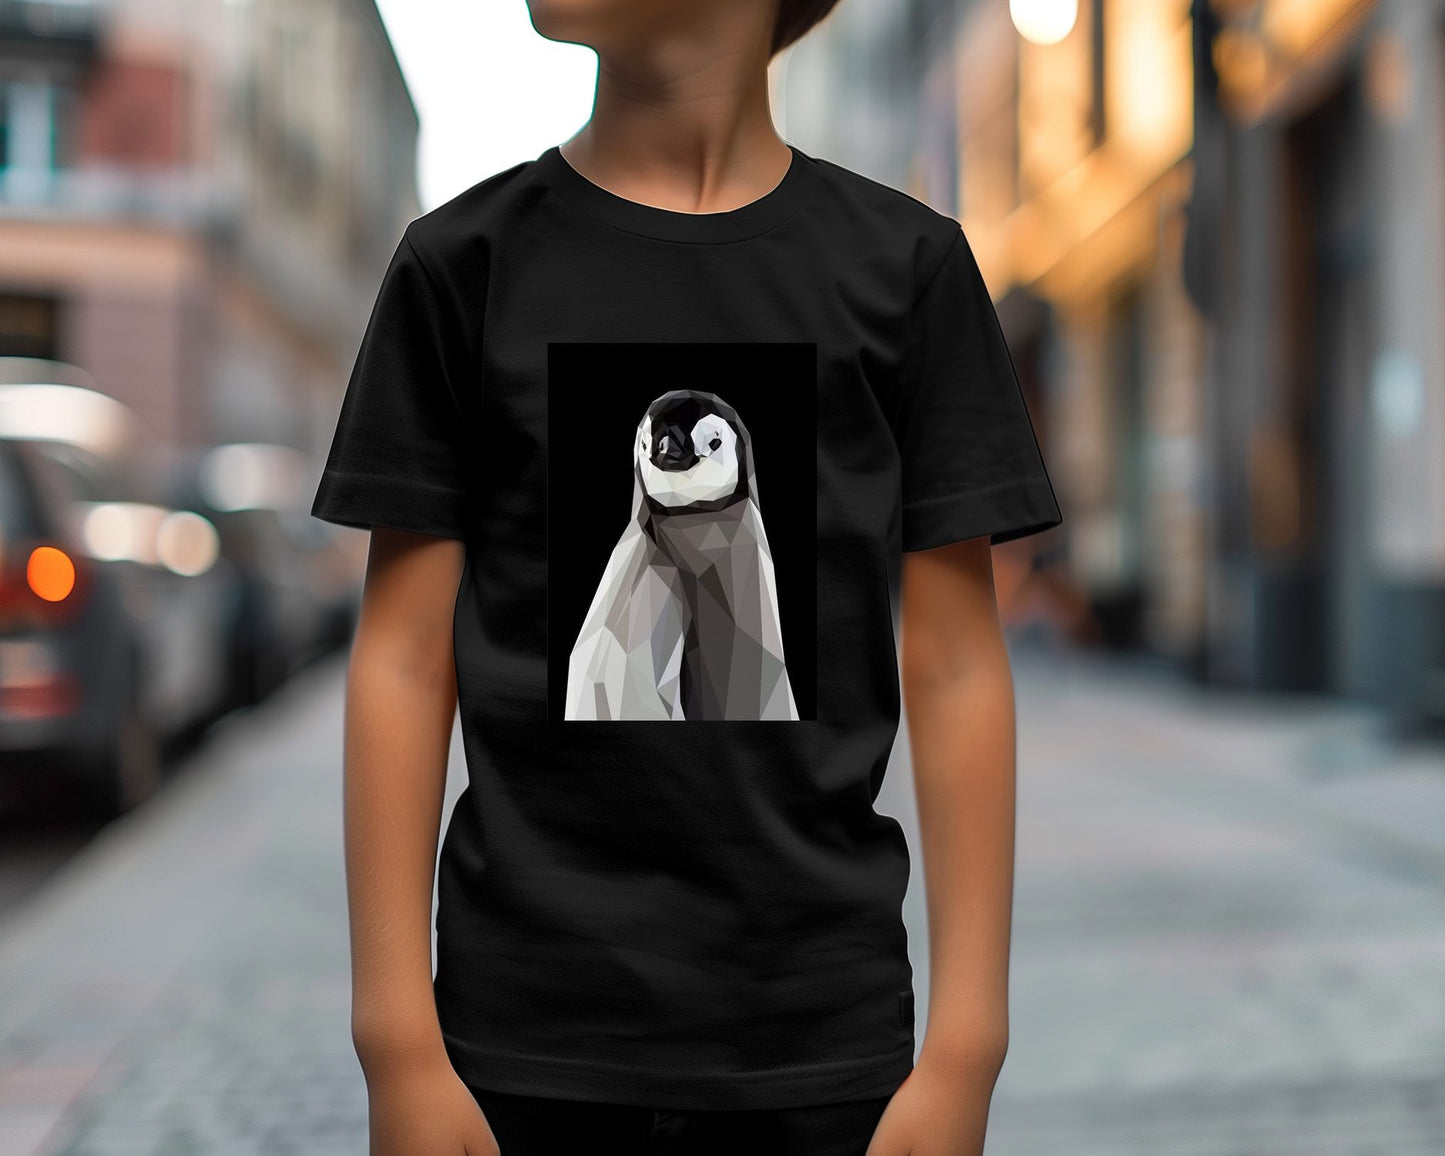 penguin nursry animals poster - @Artnesia